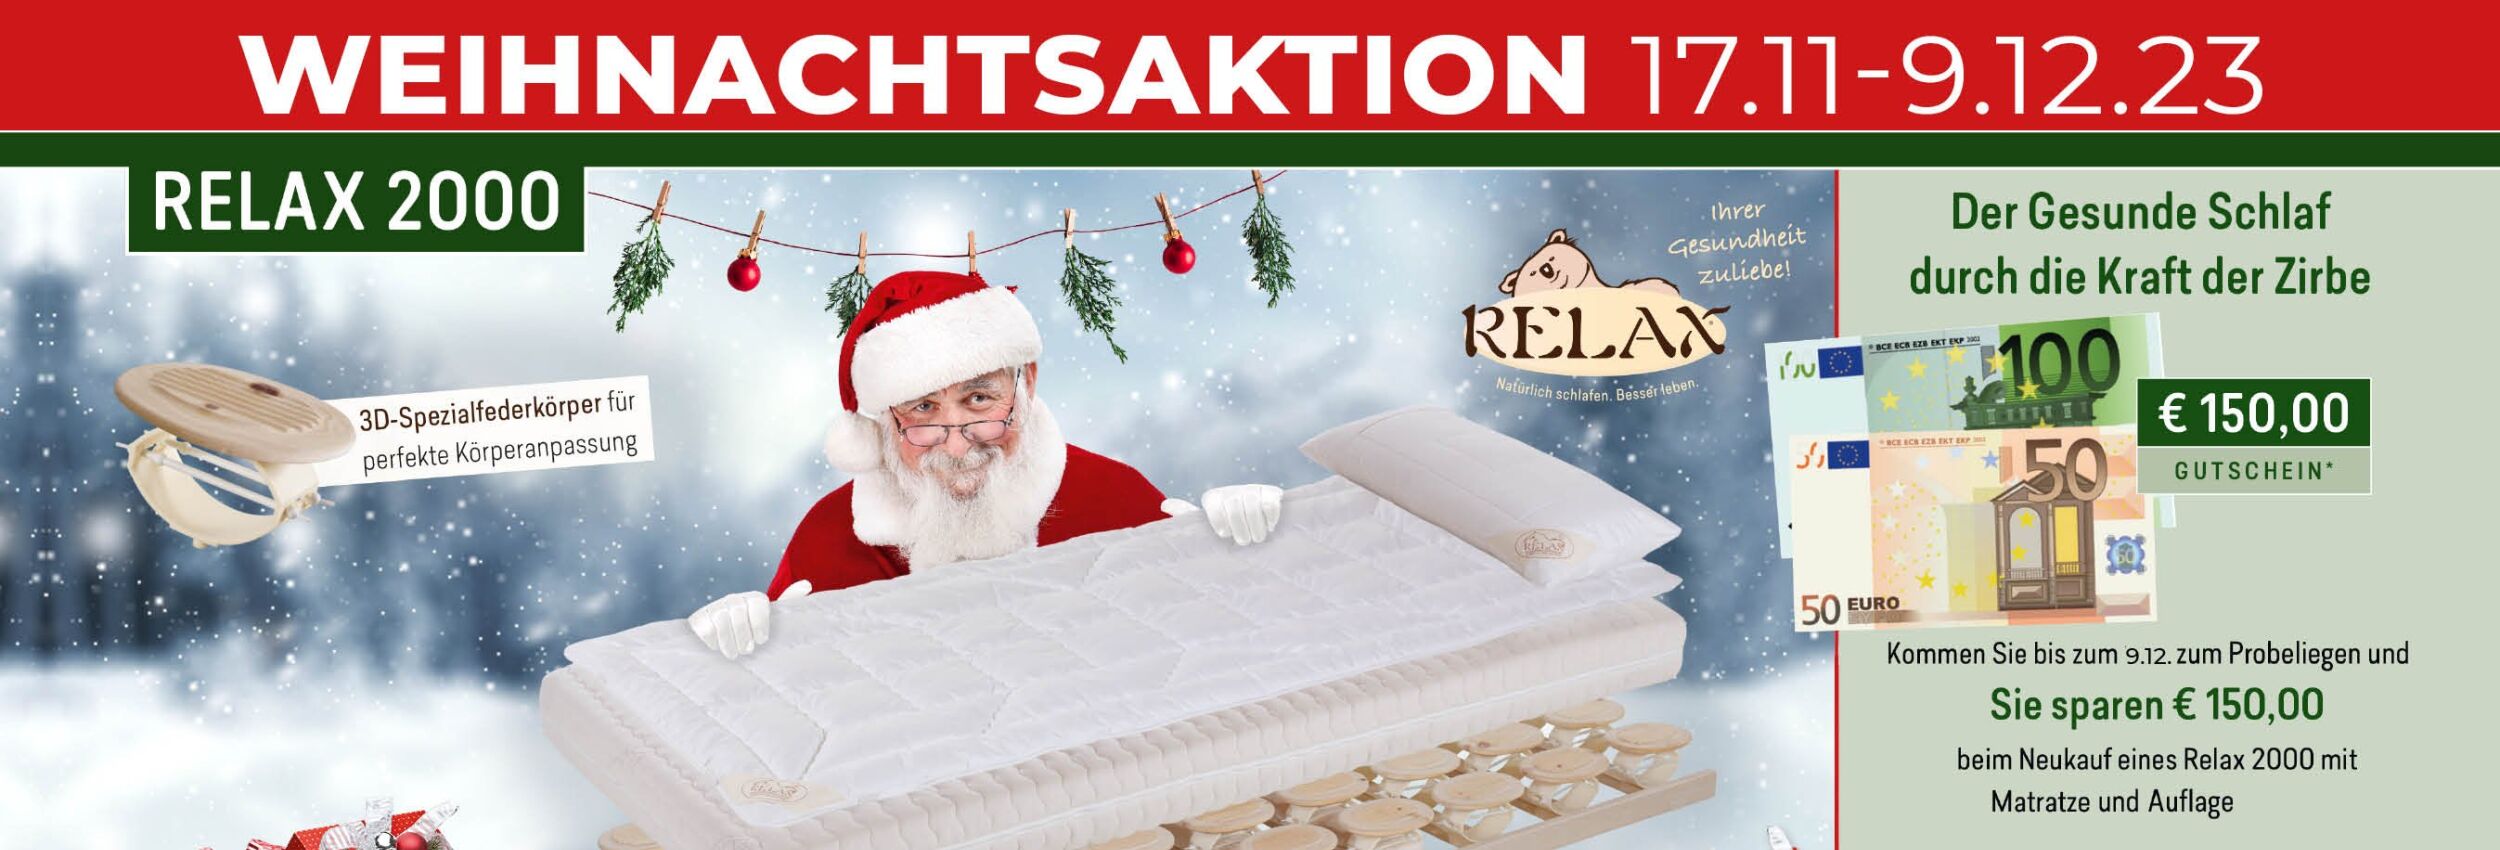 Welteke Relax Weihnachtsaktion LP Header 3